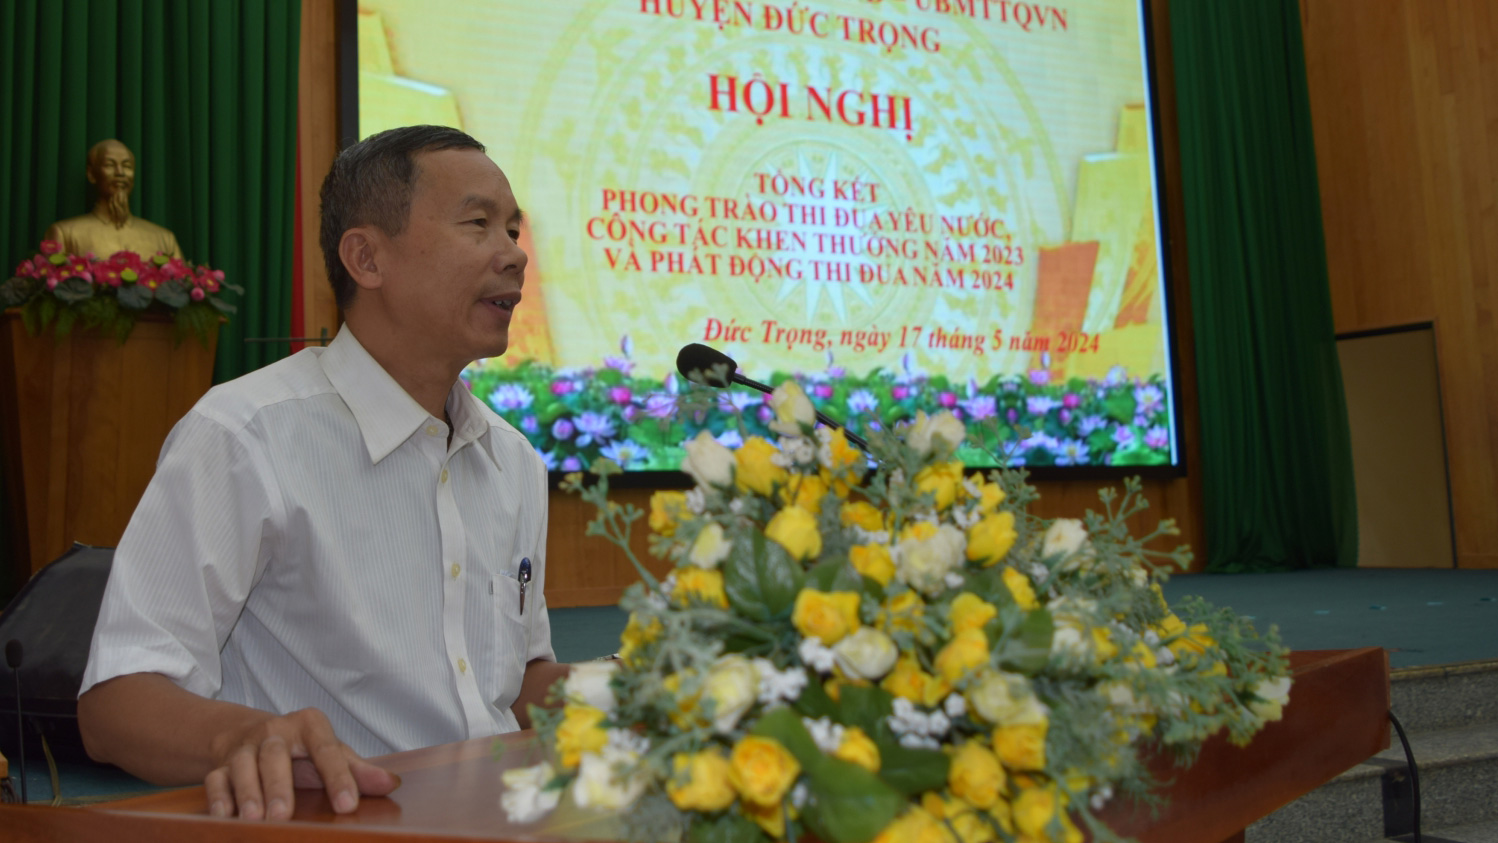 Đồng chí Phó Giám đốc Sở Nội vụ, Phó Chủ tịch Hội đồng thi đua khen thưởng tỉnh, phát biểu tại hội nghị